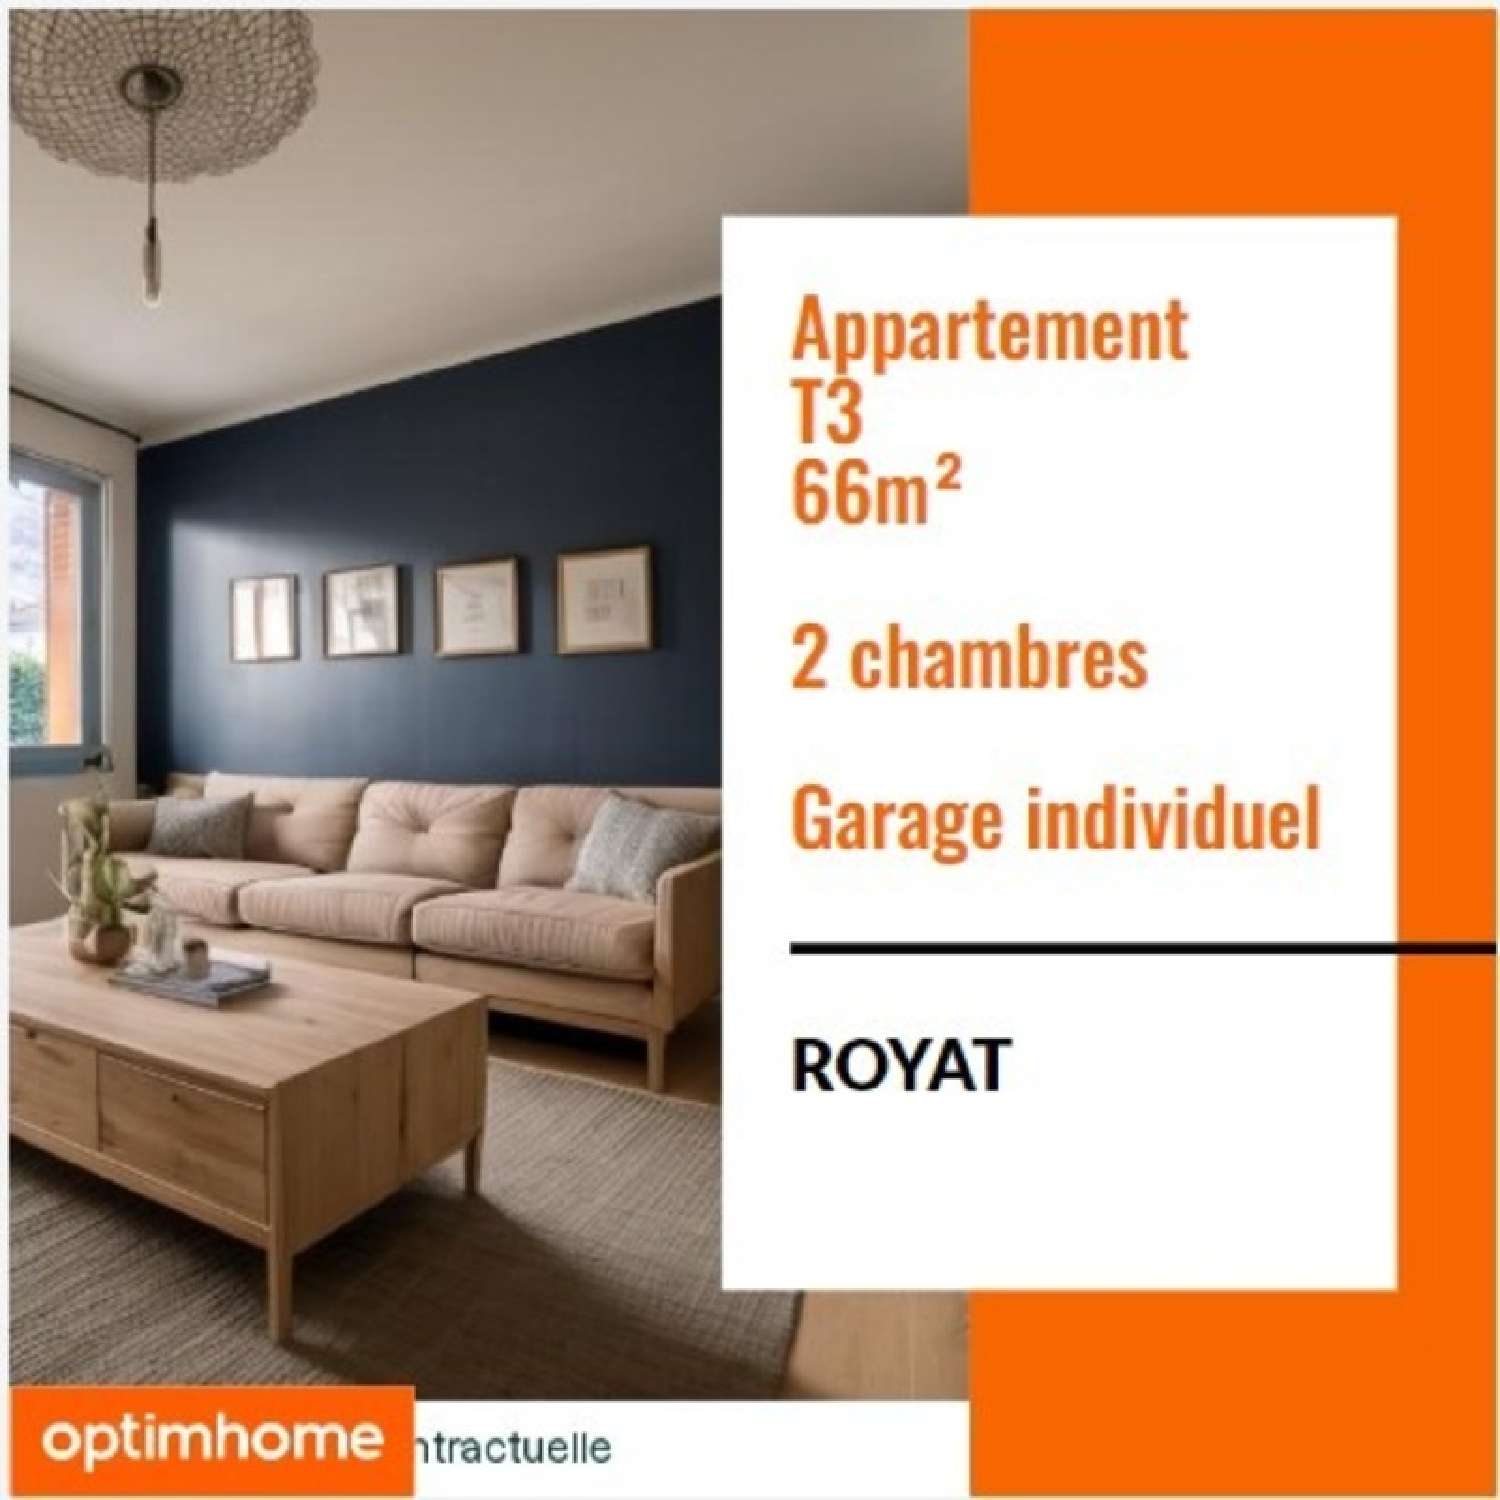  à vendre appartement Royat Puy-de-Dôme 1